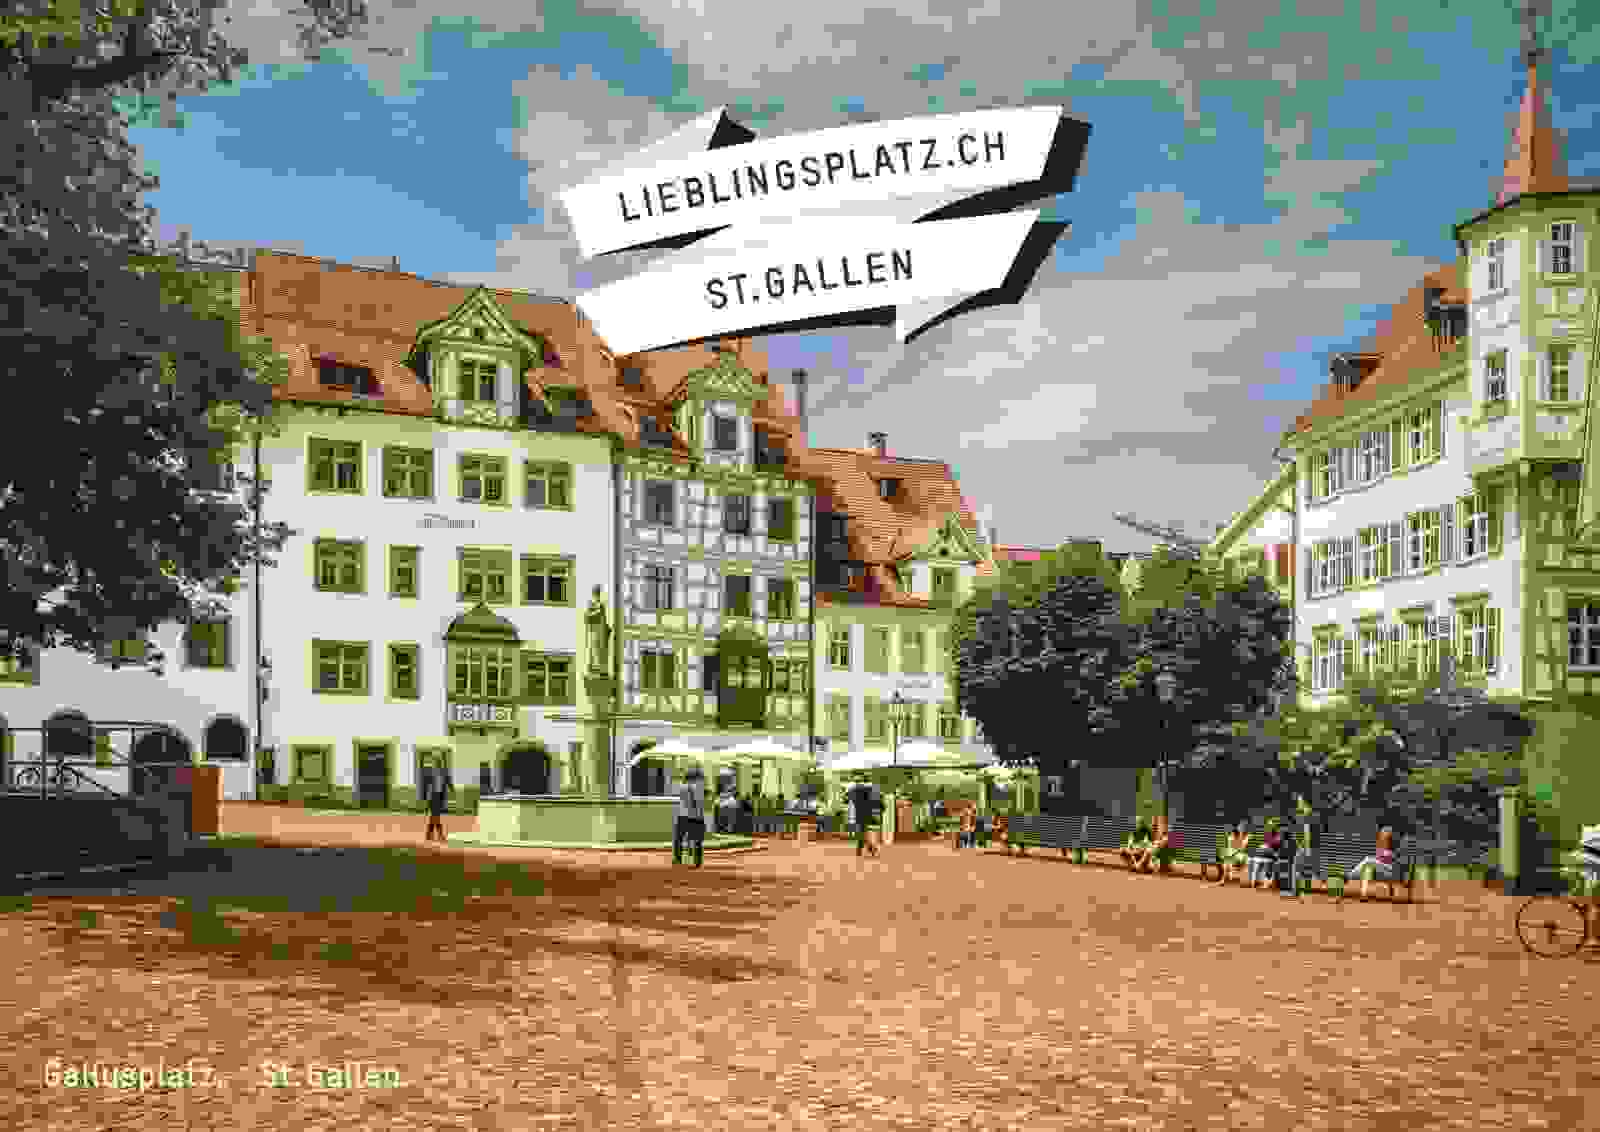 Kampagne über Lieblingsplätze der Standortförderung Stadt St.Gallen